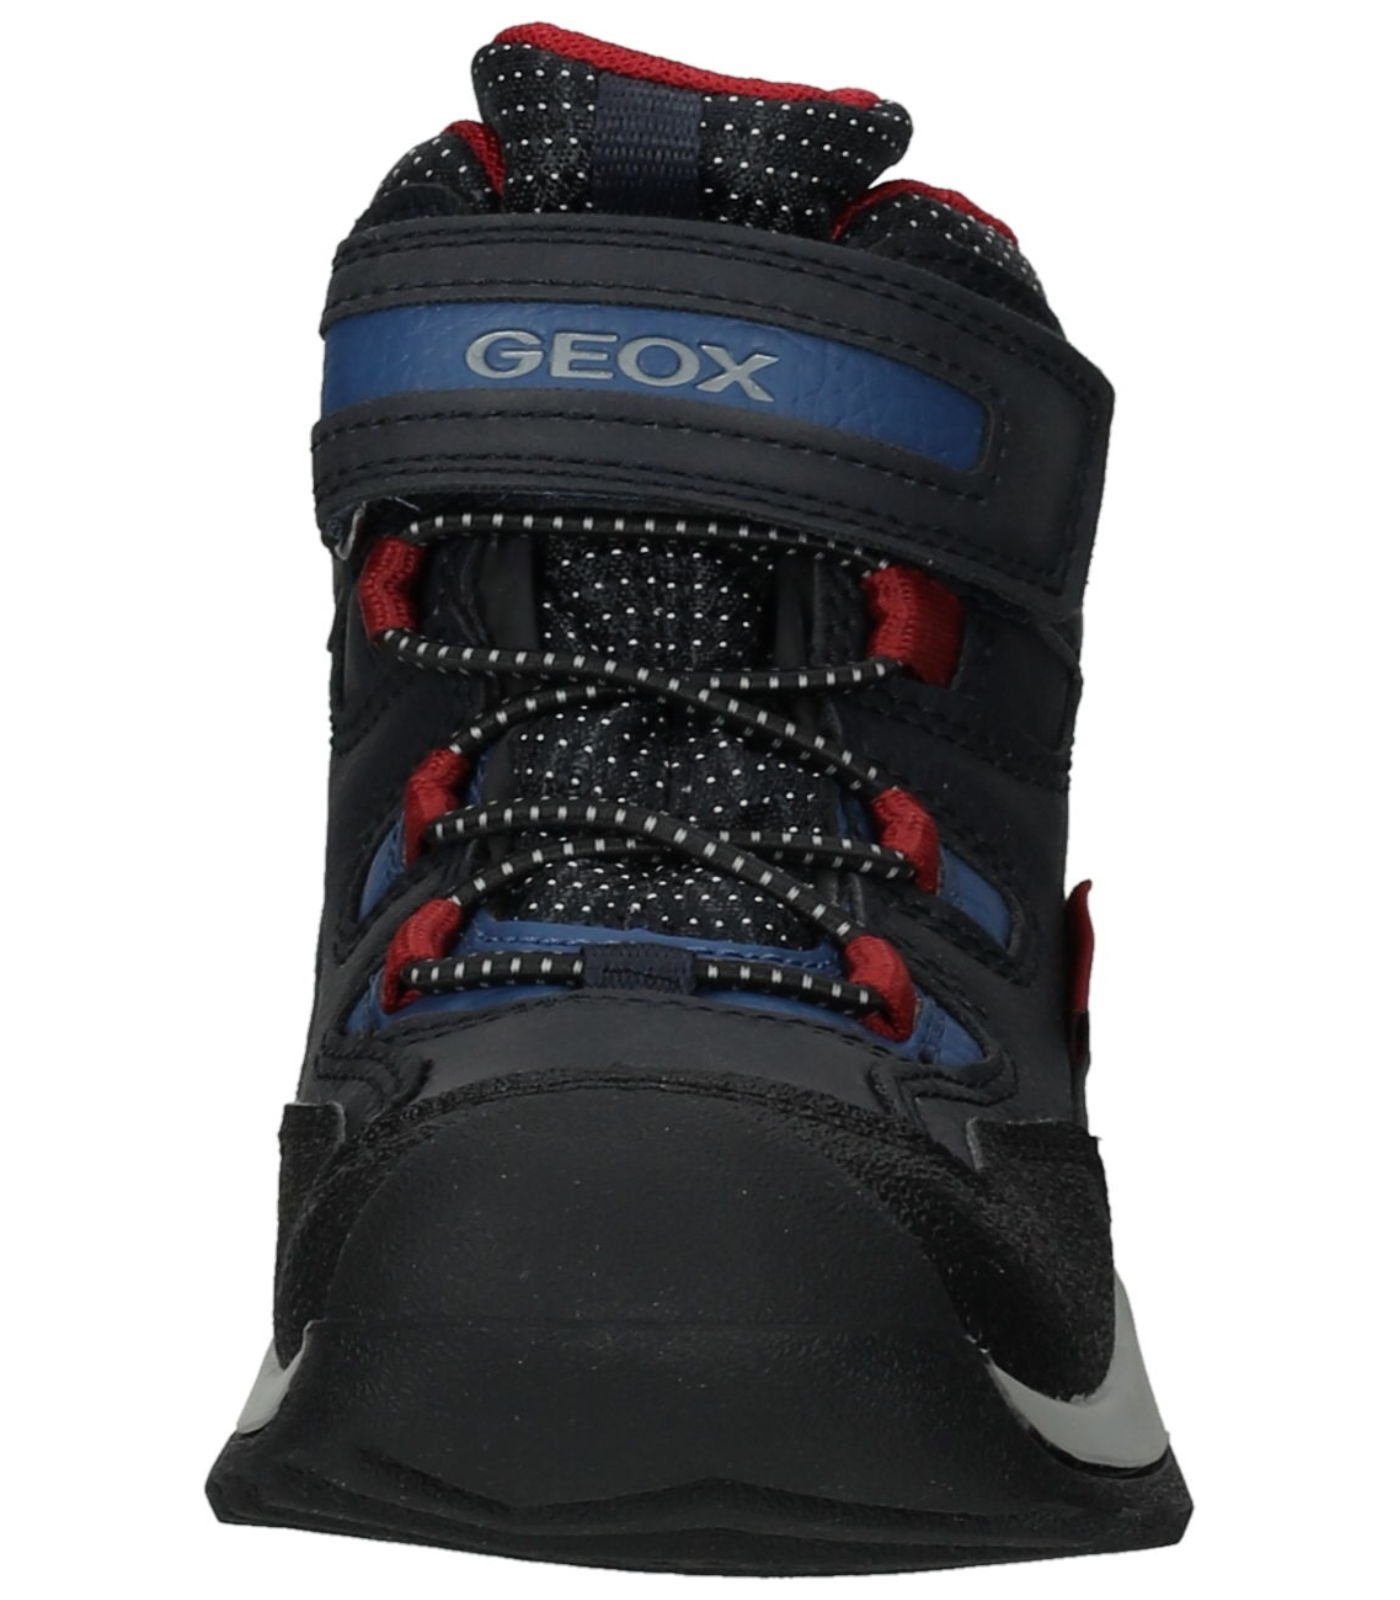 Geox Stiefelette Lederimitat/Textil Schnürstiefelette Blau RED) (NAVY/DK